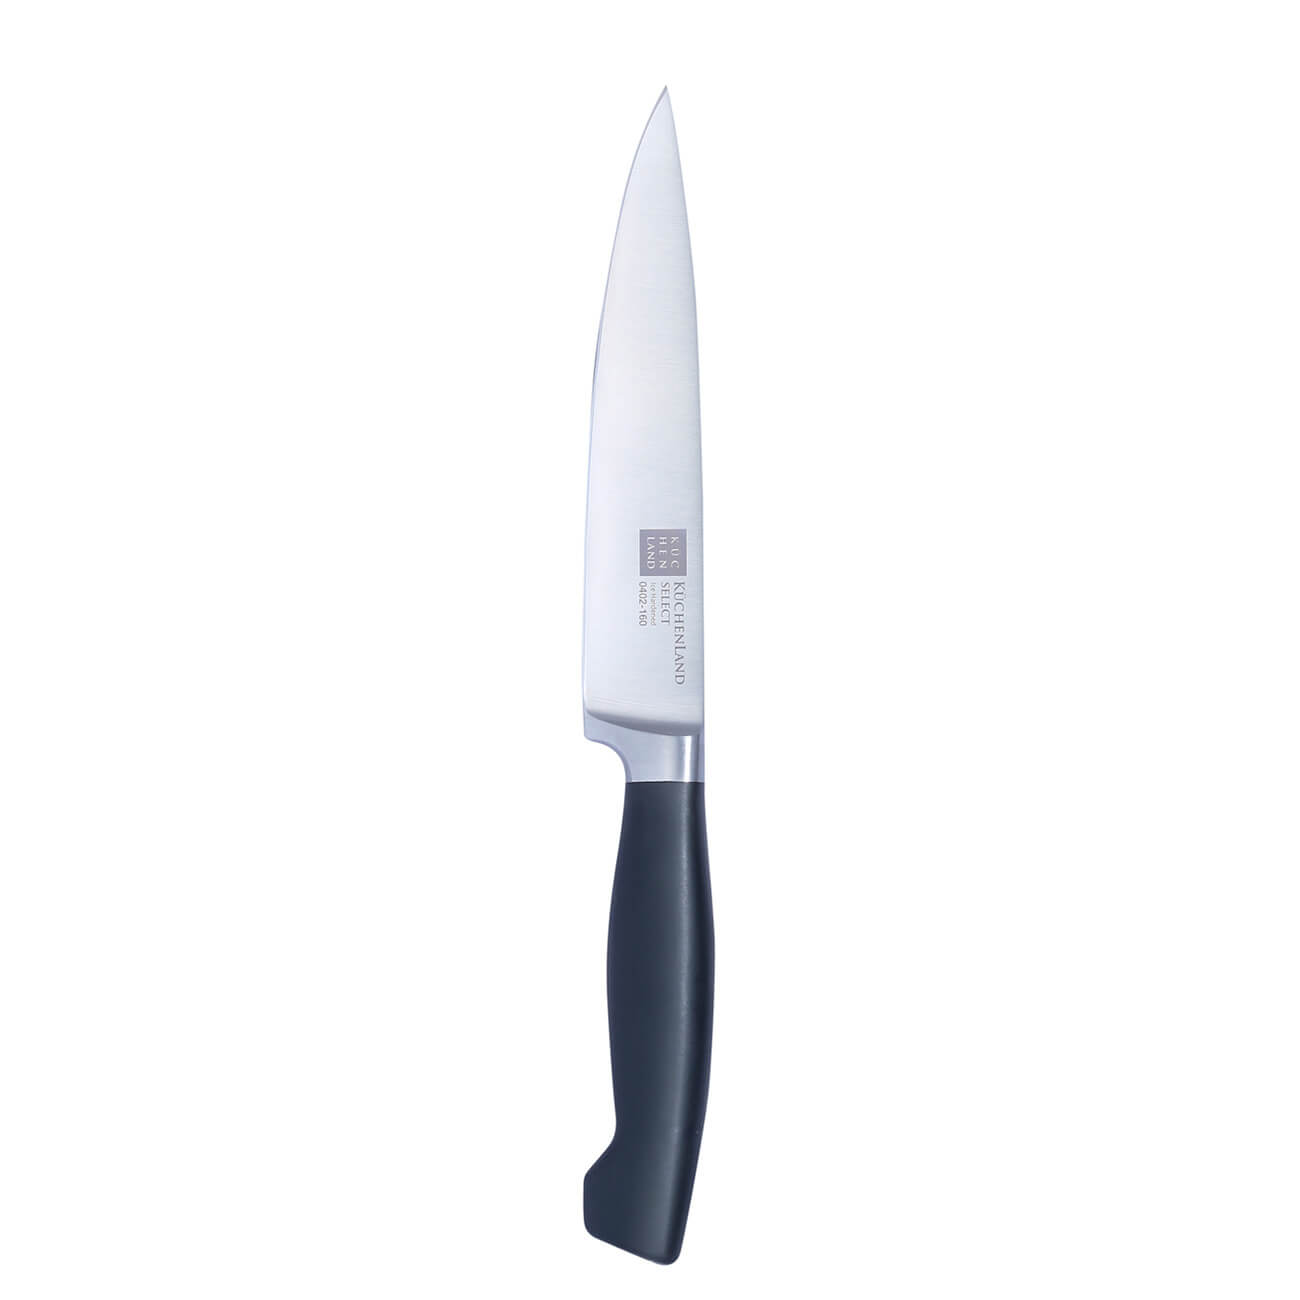 Kuchenland Нож для нарезки, 16 см, сталь/пластик, Select набор для выпечки 5 пр скалка венчик формы силикон сталь дерево фигуры bakery